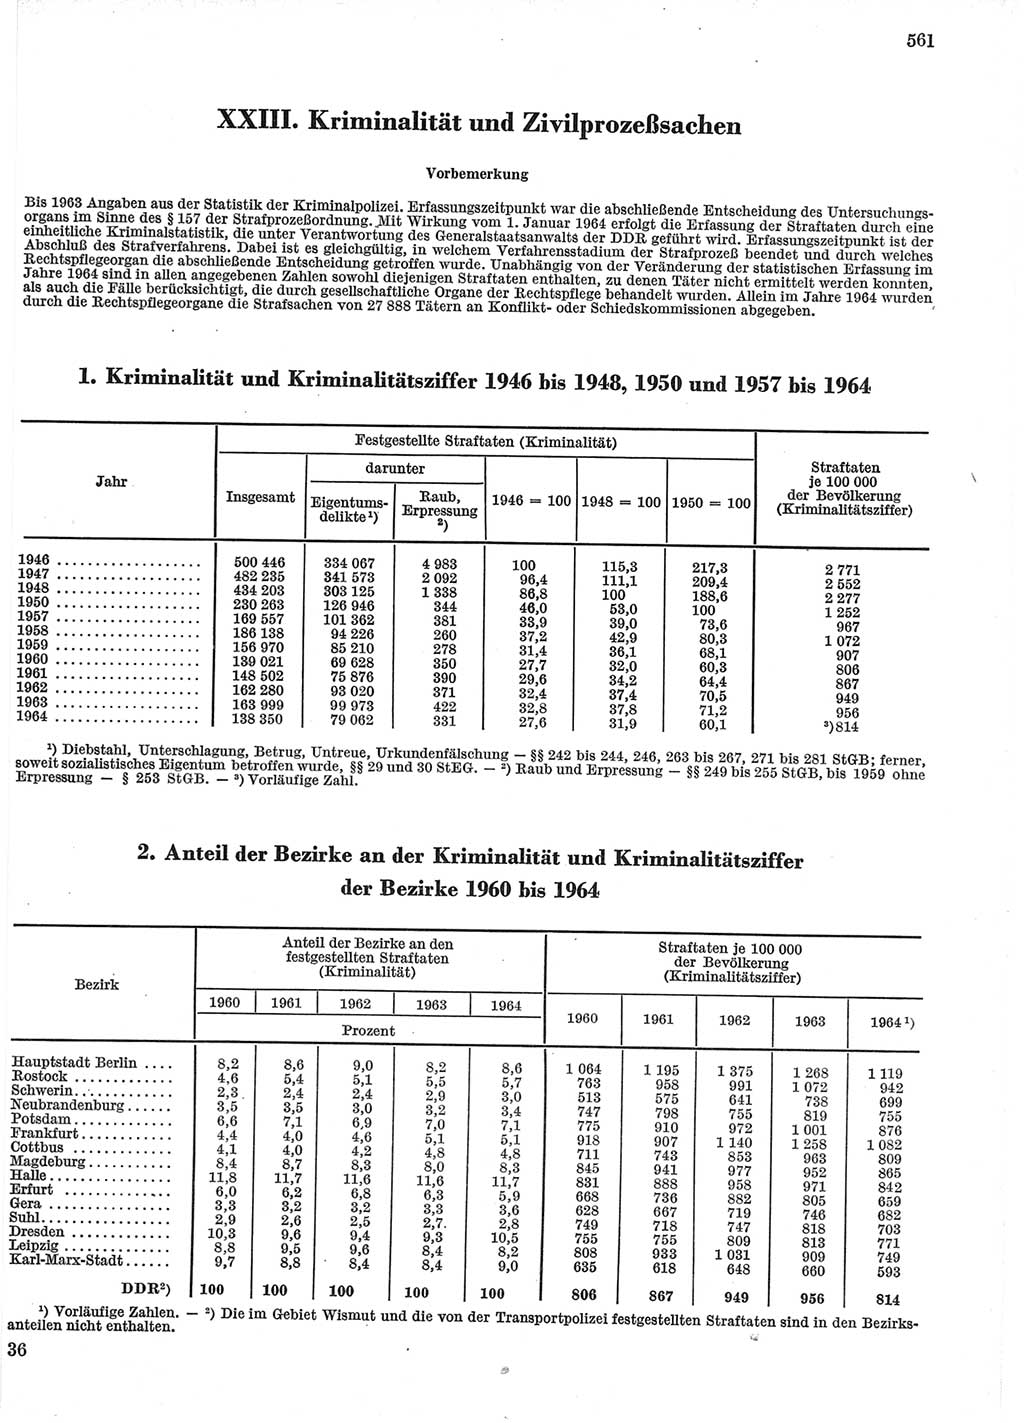 Statistisches Jahrbuch der Deutschen Demokratischen Republik (DDR) 1965, Seite 561 (Stat. Jb. DDR 1965, S. 561)